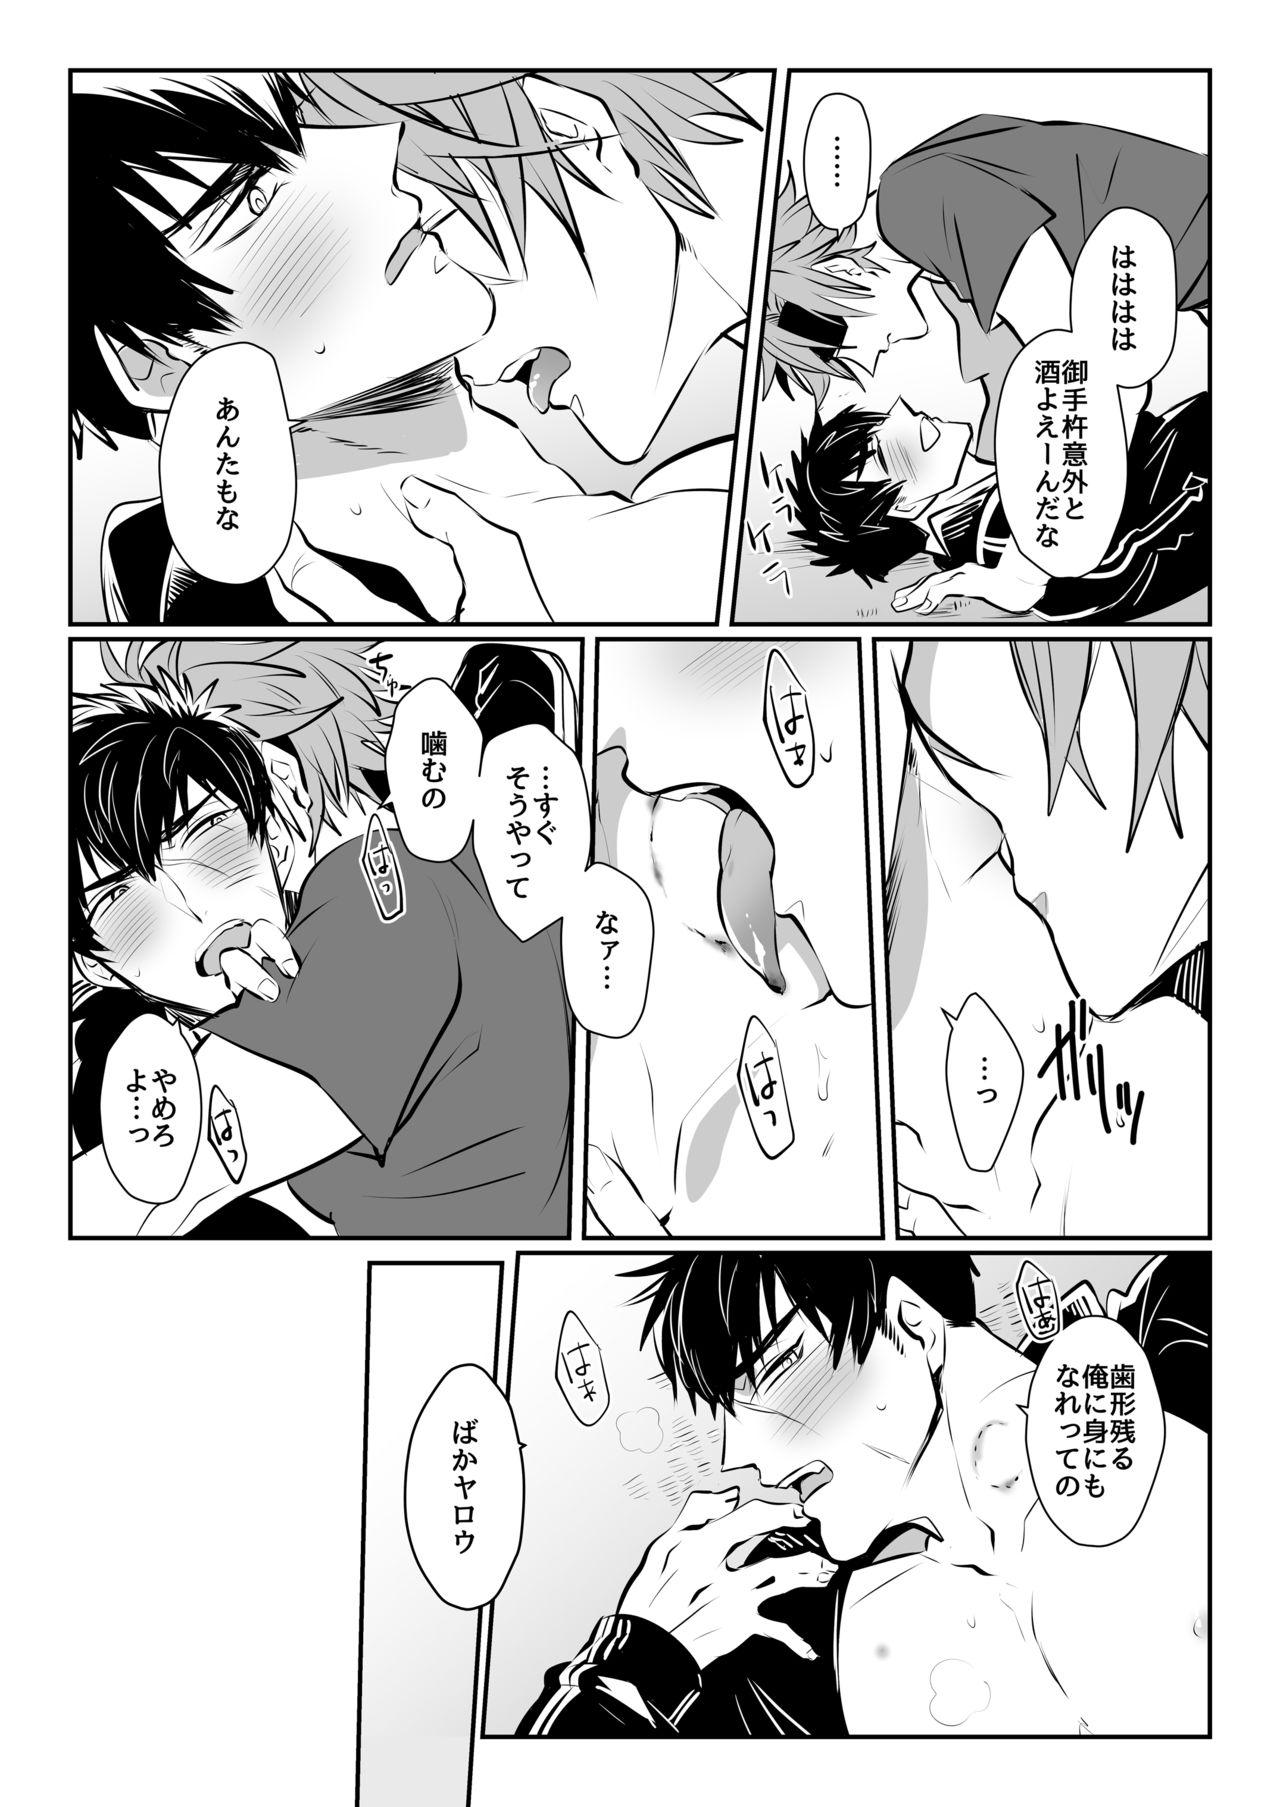 Perverted Horoyoi Oyoyoi o Futari-san - Touken ranbu Real Amateurs - Page 11